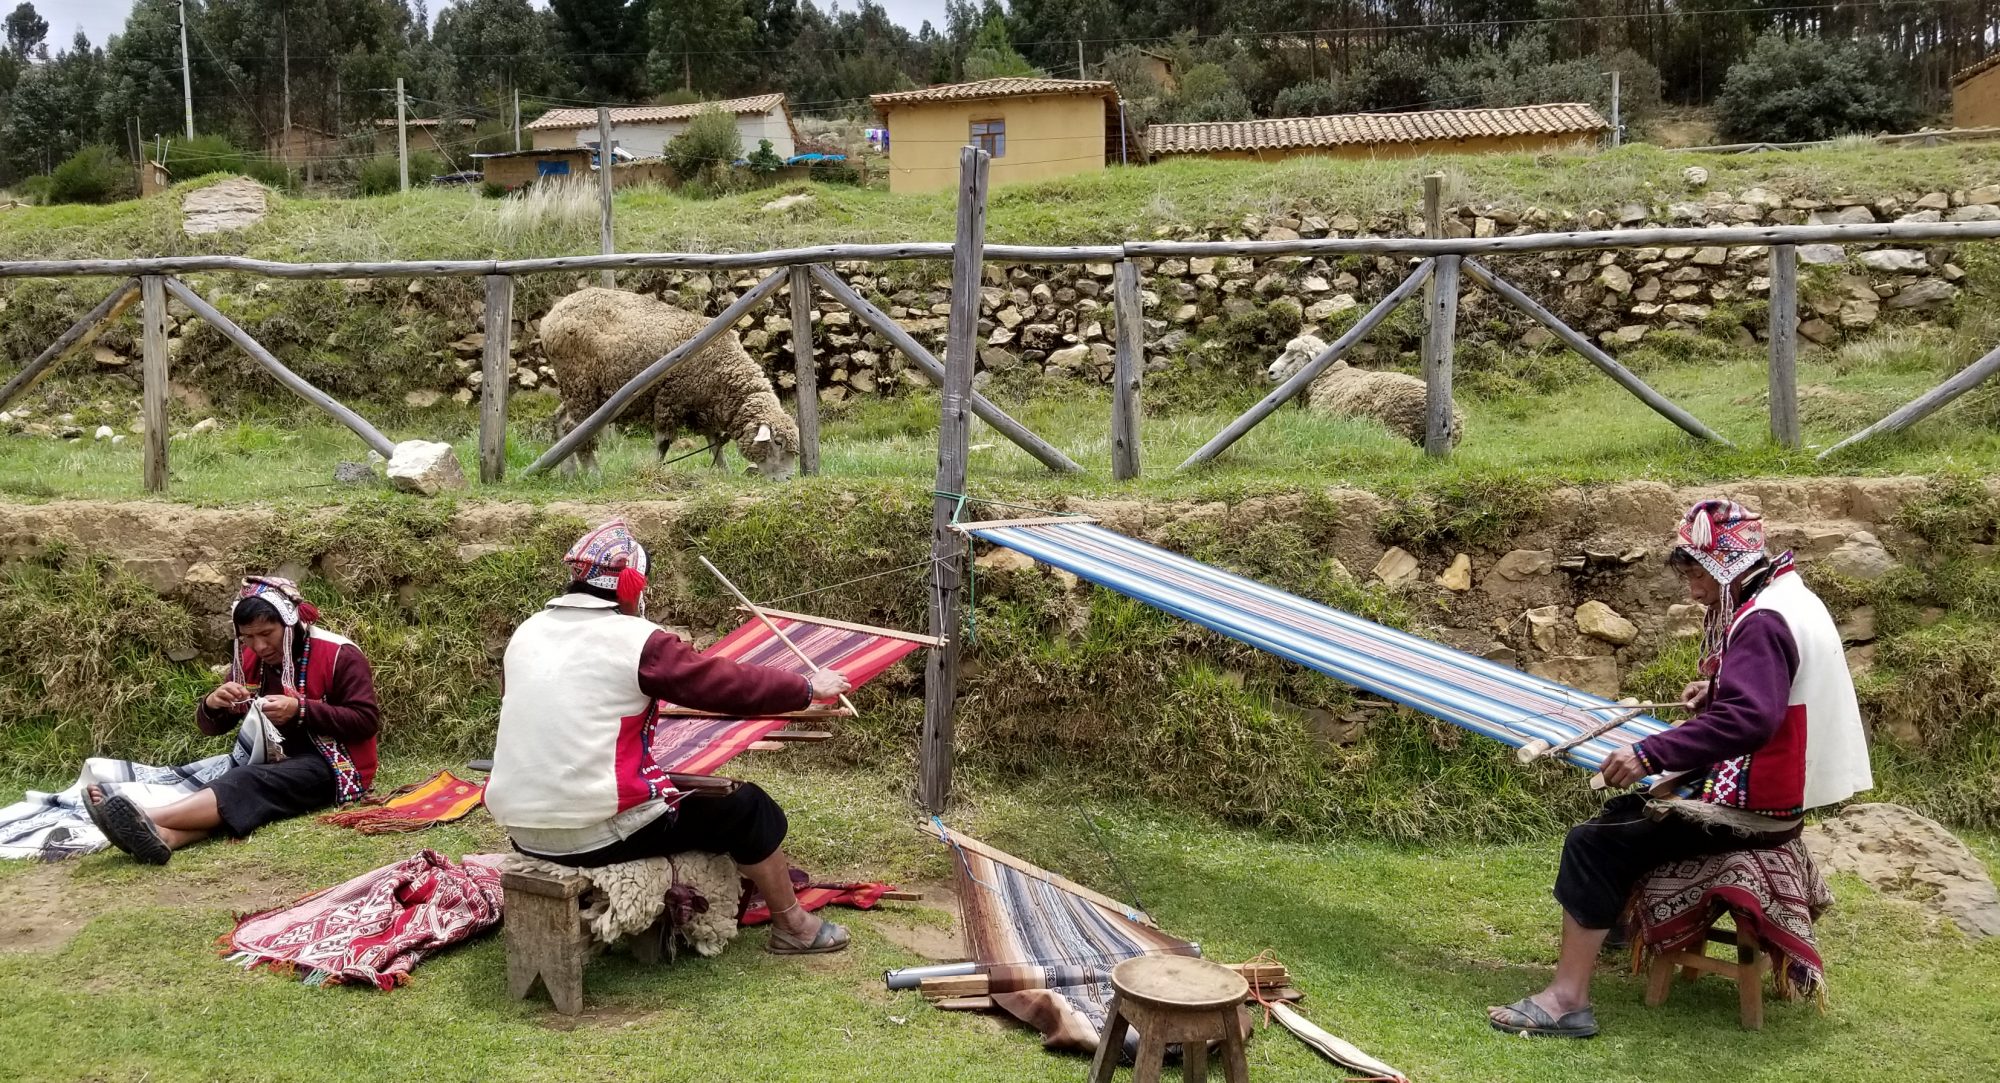 Men weaving on backstrap looms